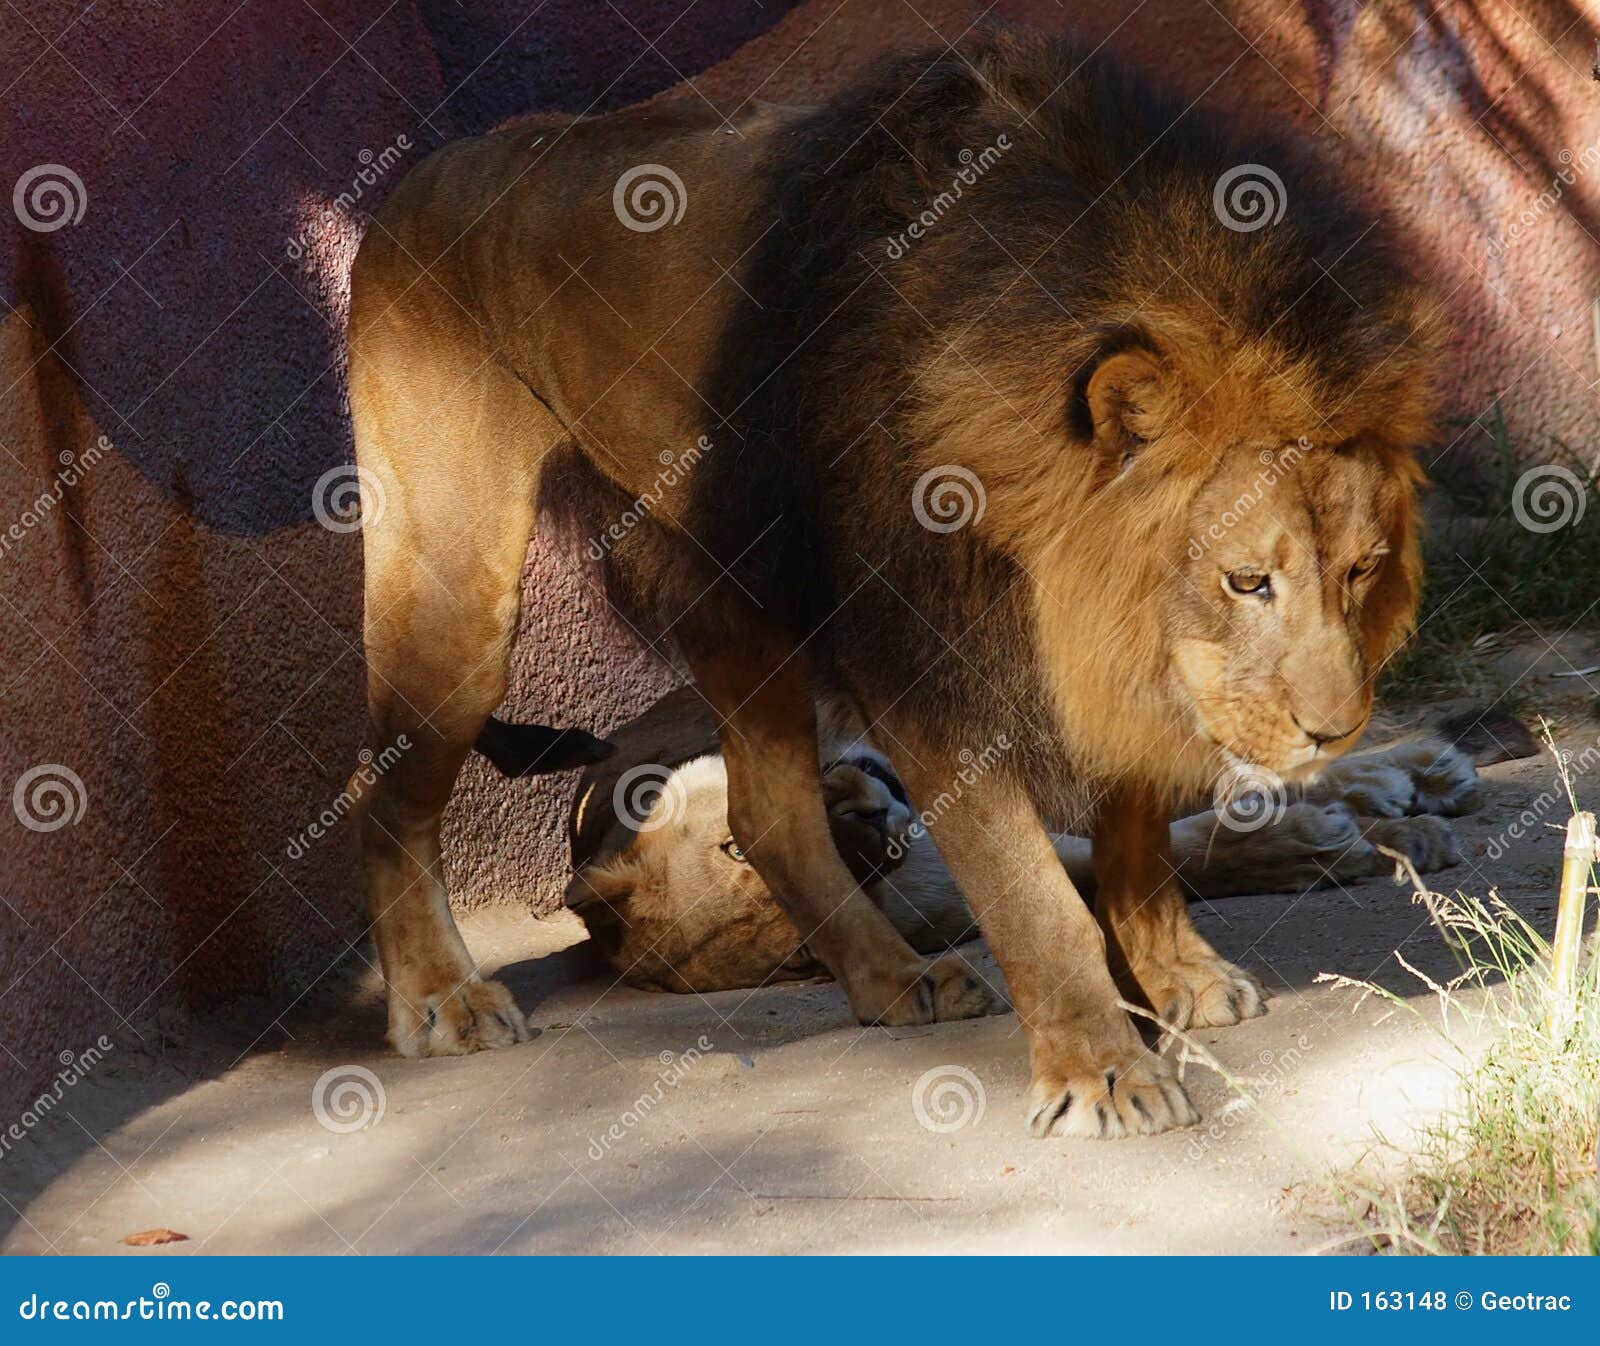 male lion guarding his female lion